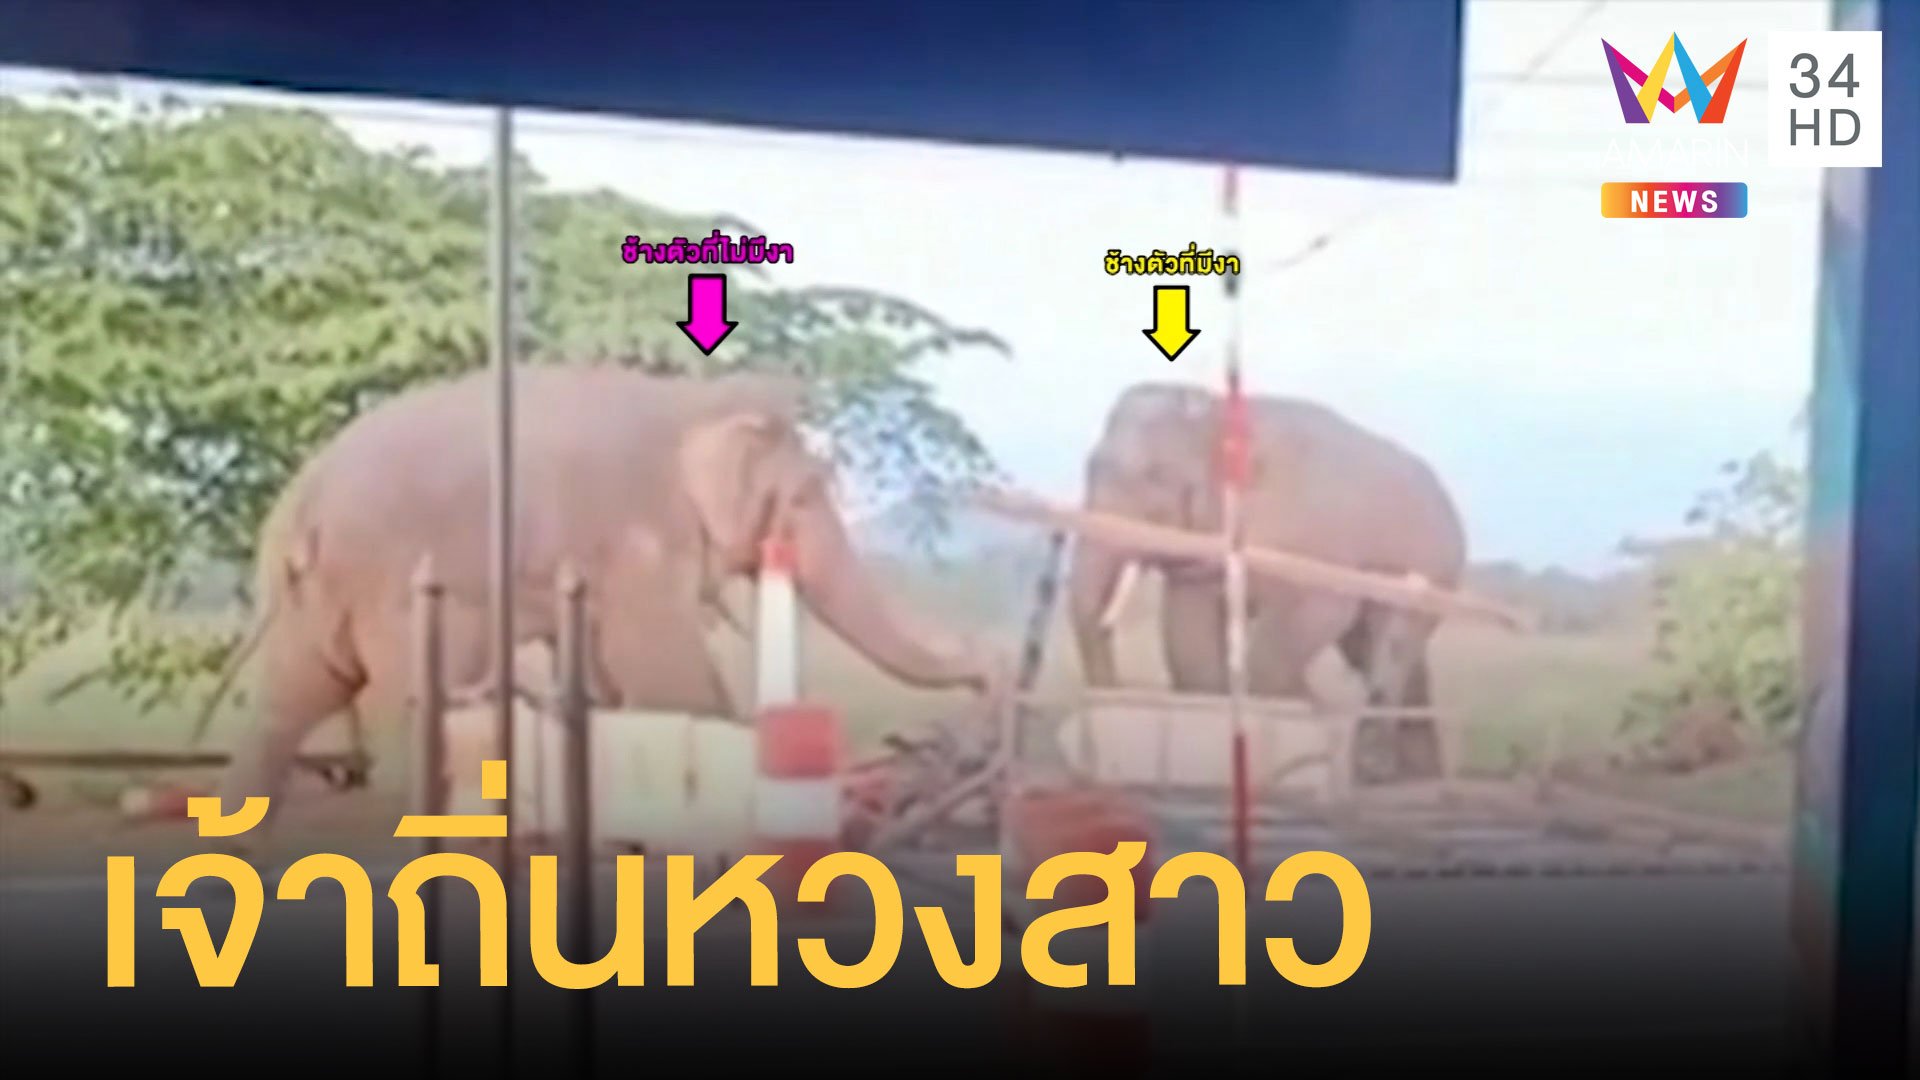 ช้างป่าเจ้าถิ่นไม่ยอมช้างคู่อริซัดกันนัว ด่านตรวจทหารพังราบ | ข่าวอรุณอมรินทร์ | 23 พ.ย. 63 | AMARIN TVHD34